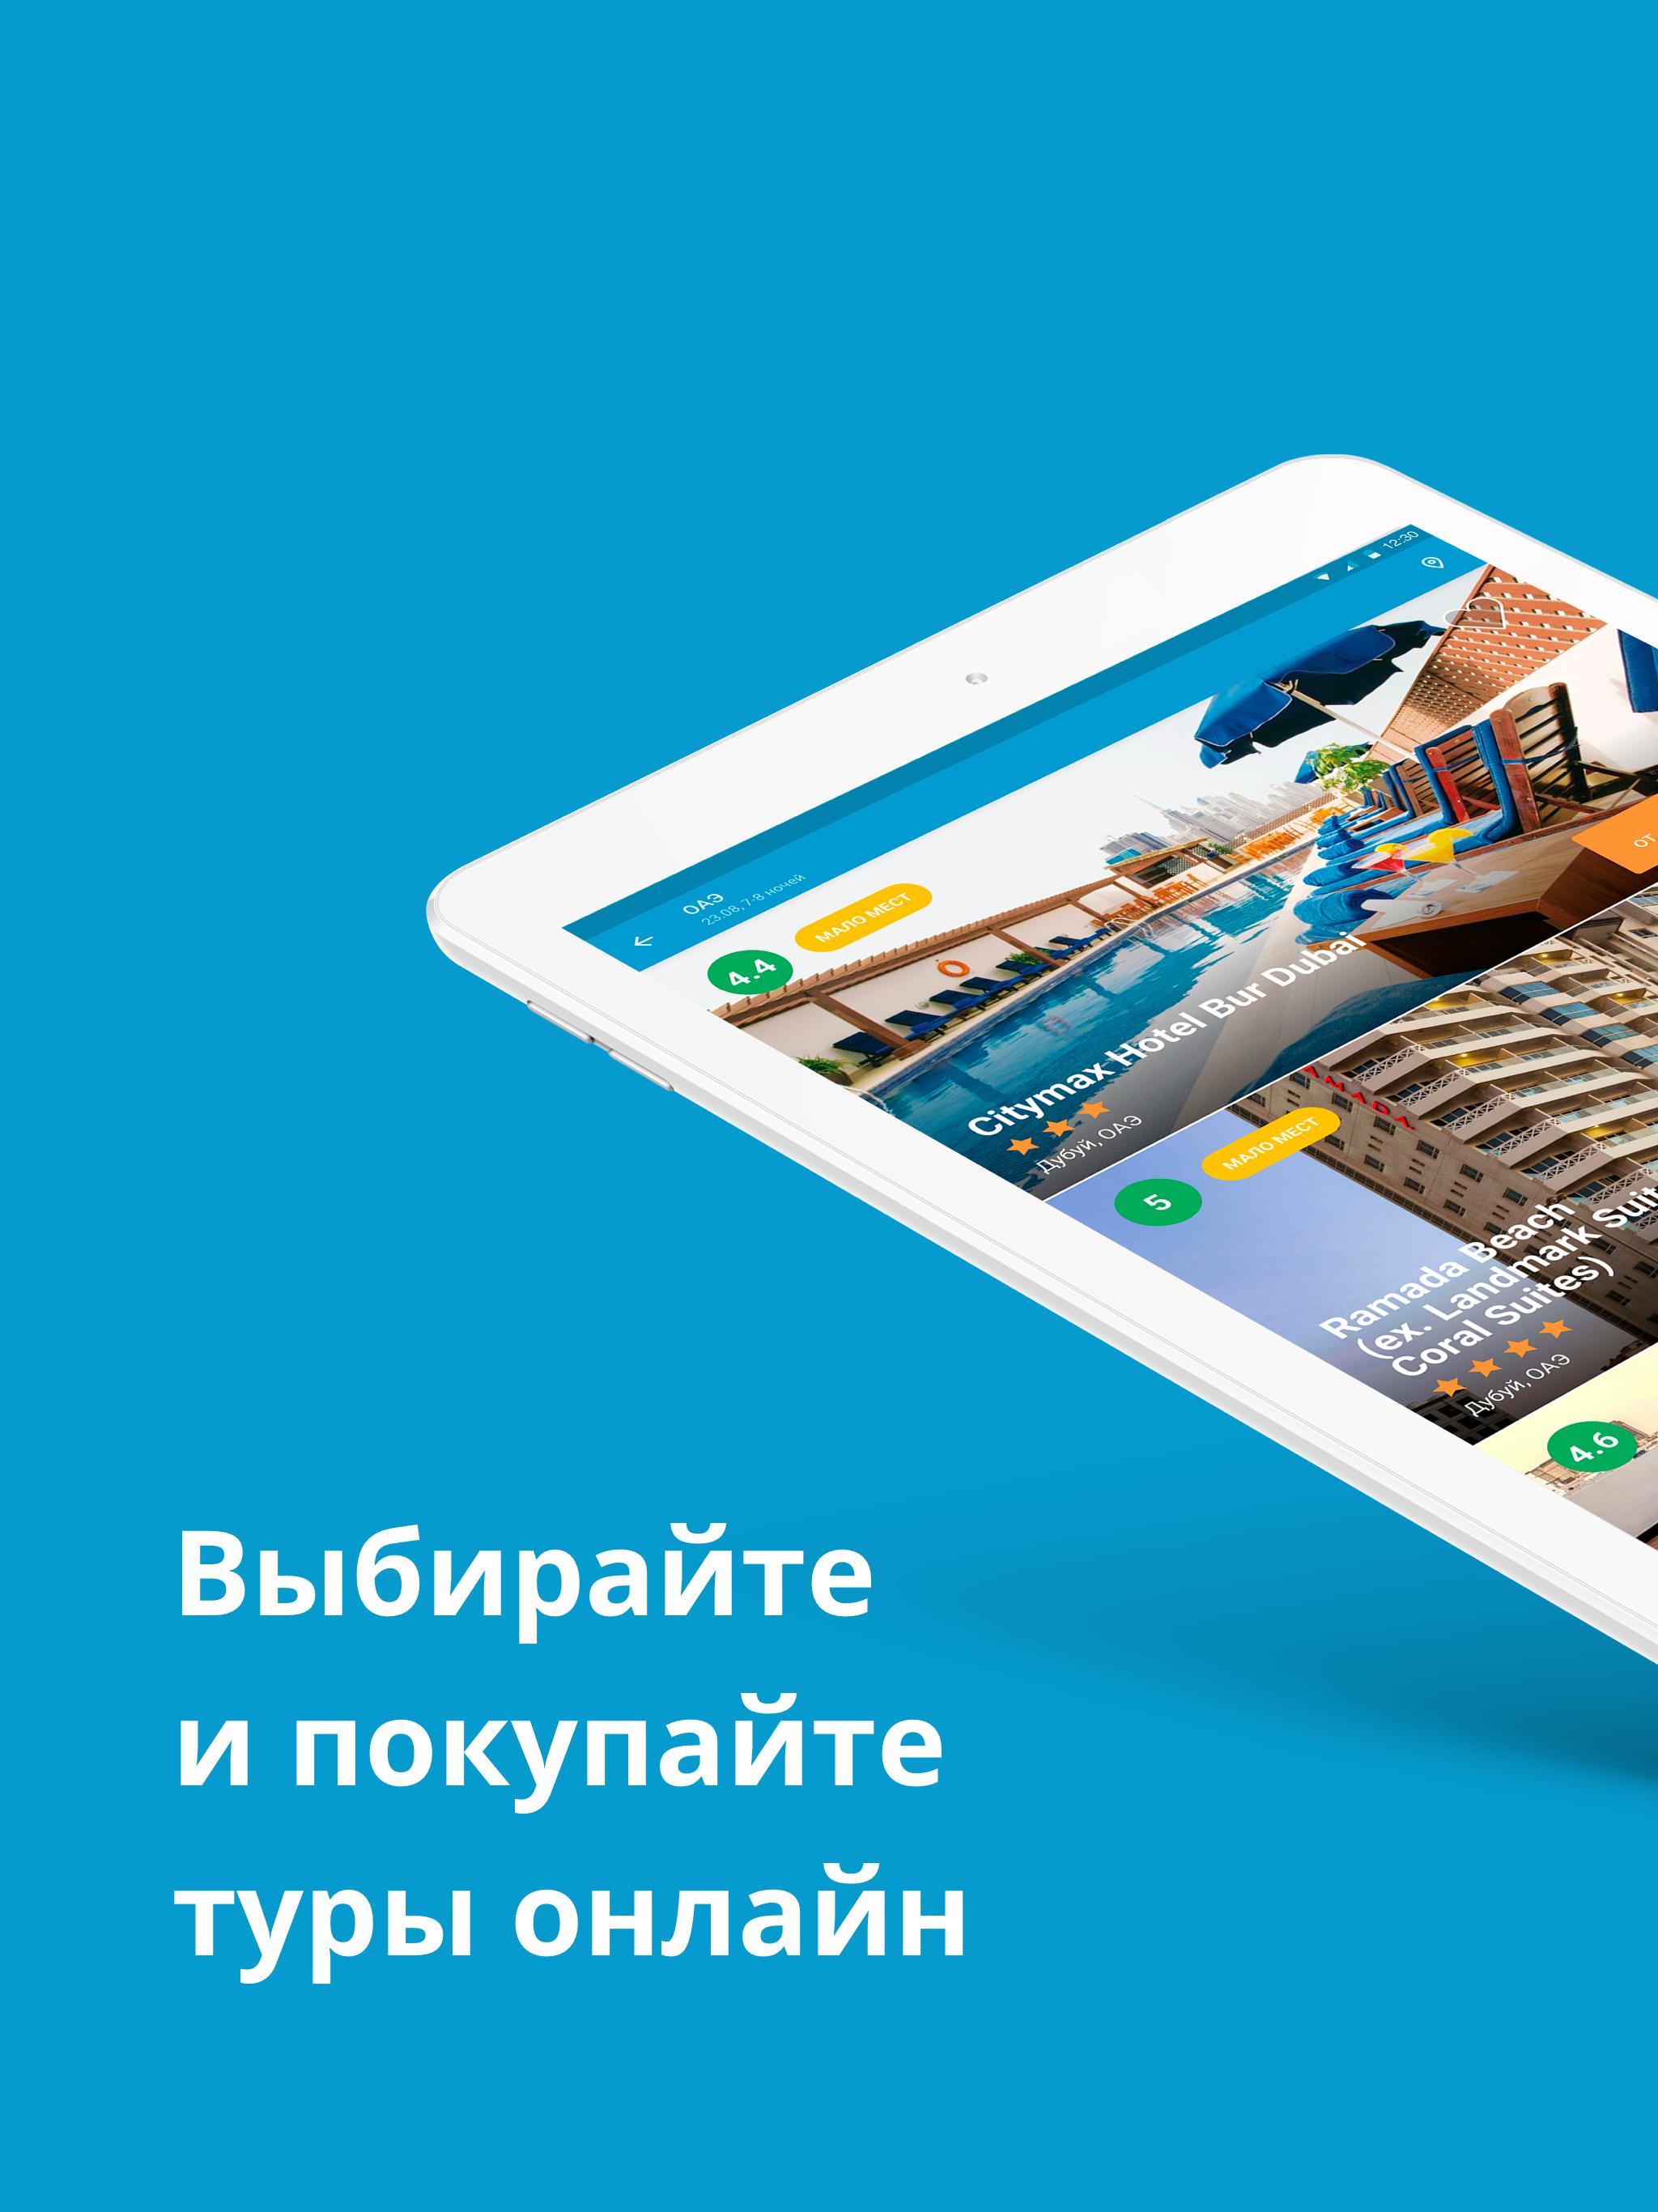 Travelata.ru Все горящие туры и путевки онлайн 3.6.7 Screenshot 6